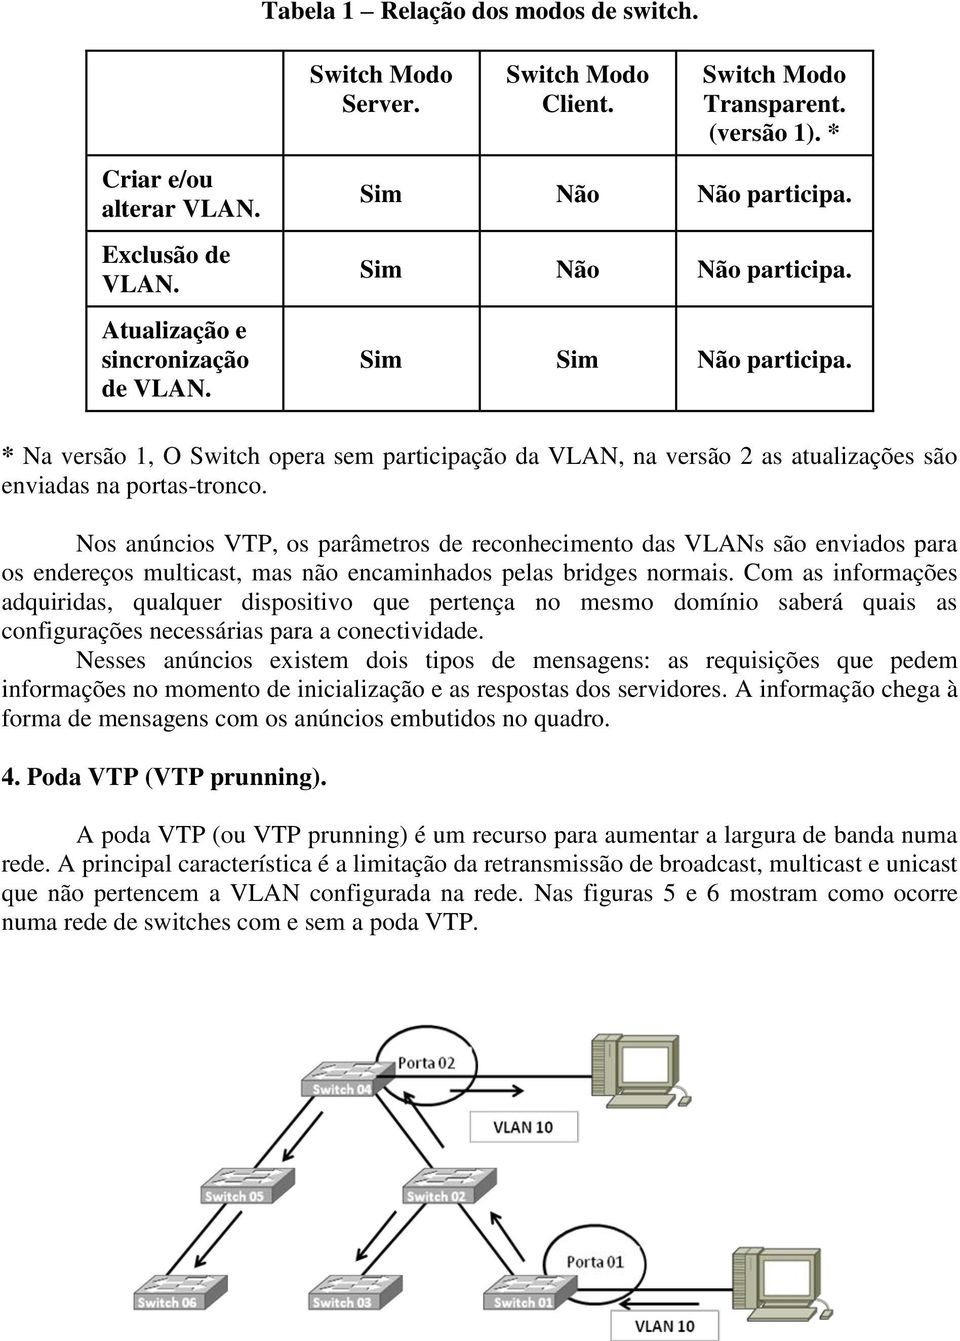 Nos anúncios VTP, os parâmetros de reconhecimento das VLANs são enviados para os endereços multicast, mas não encaminhados pelas bridges normais.